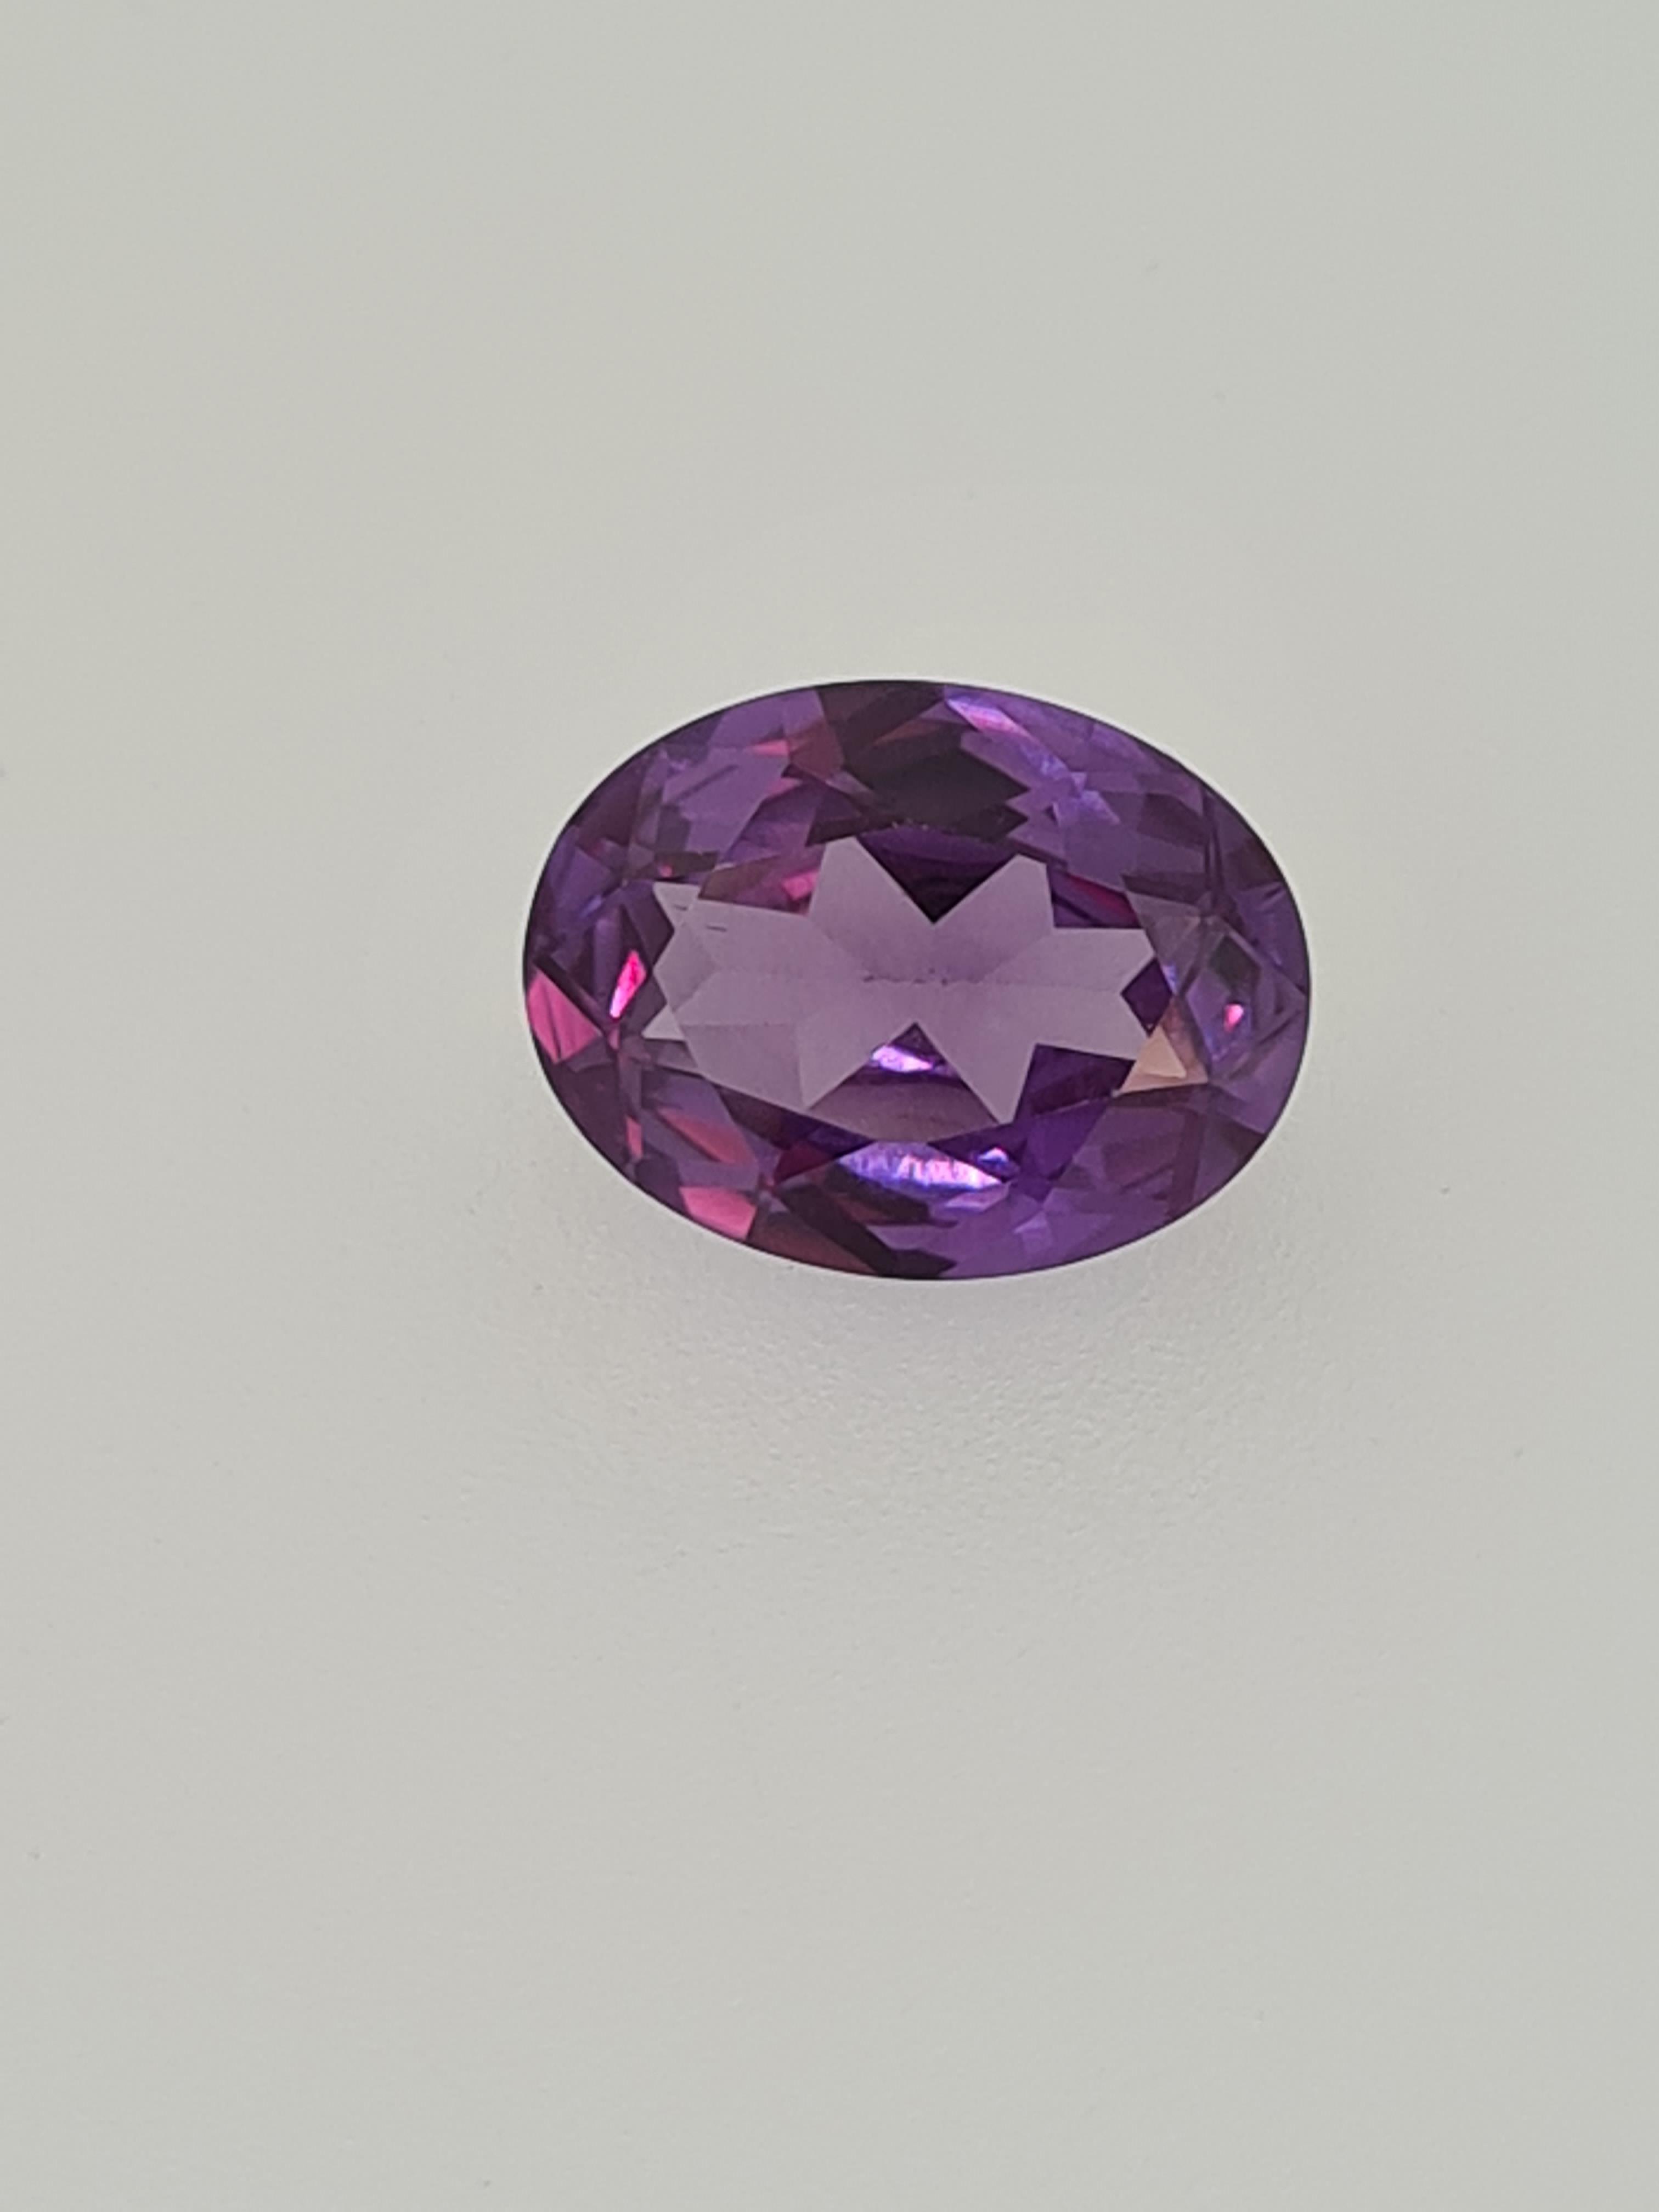 Amethyst oval cut gemstone - Image 4 of 4